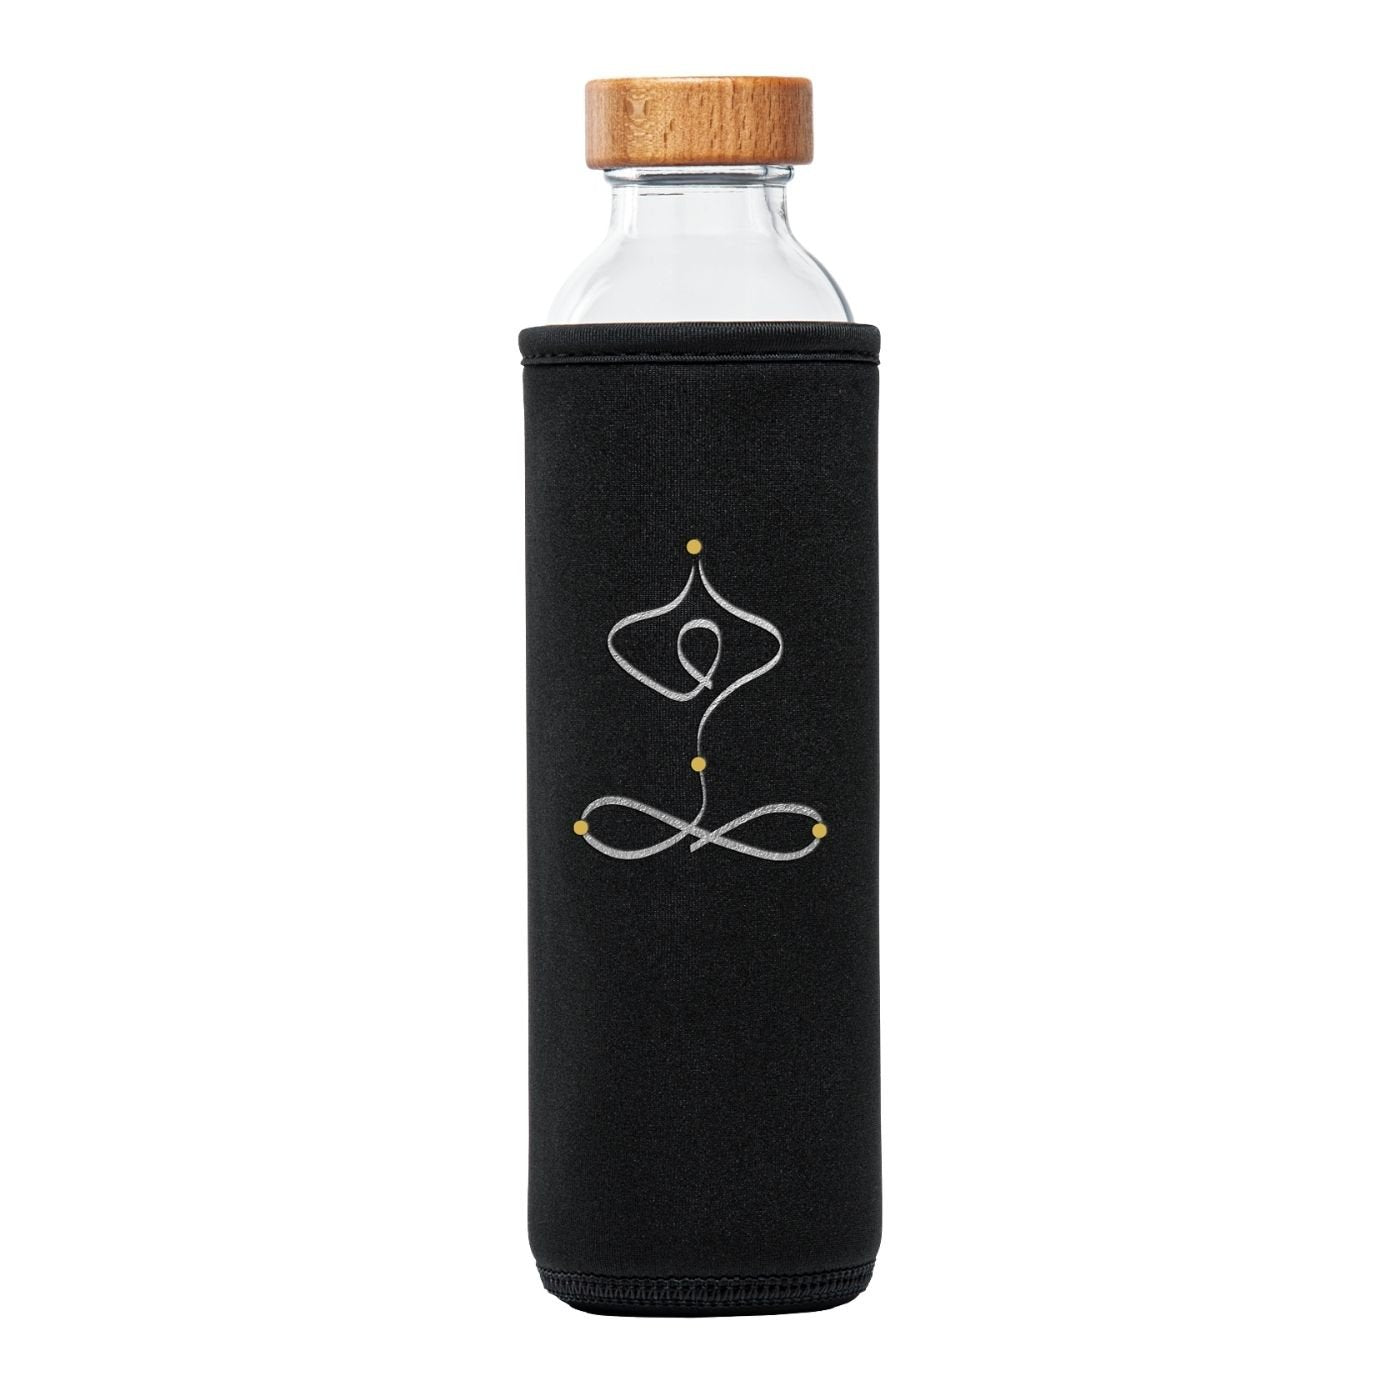 botella de agua de cristal Flaska con tapón de rosca y funda protectora de neopreno con diseño de yoga Calm